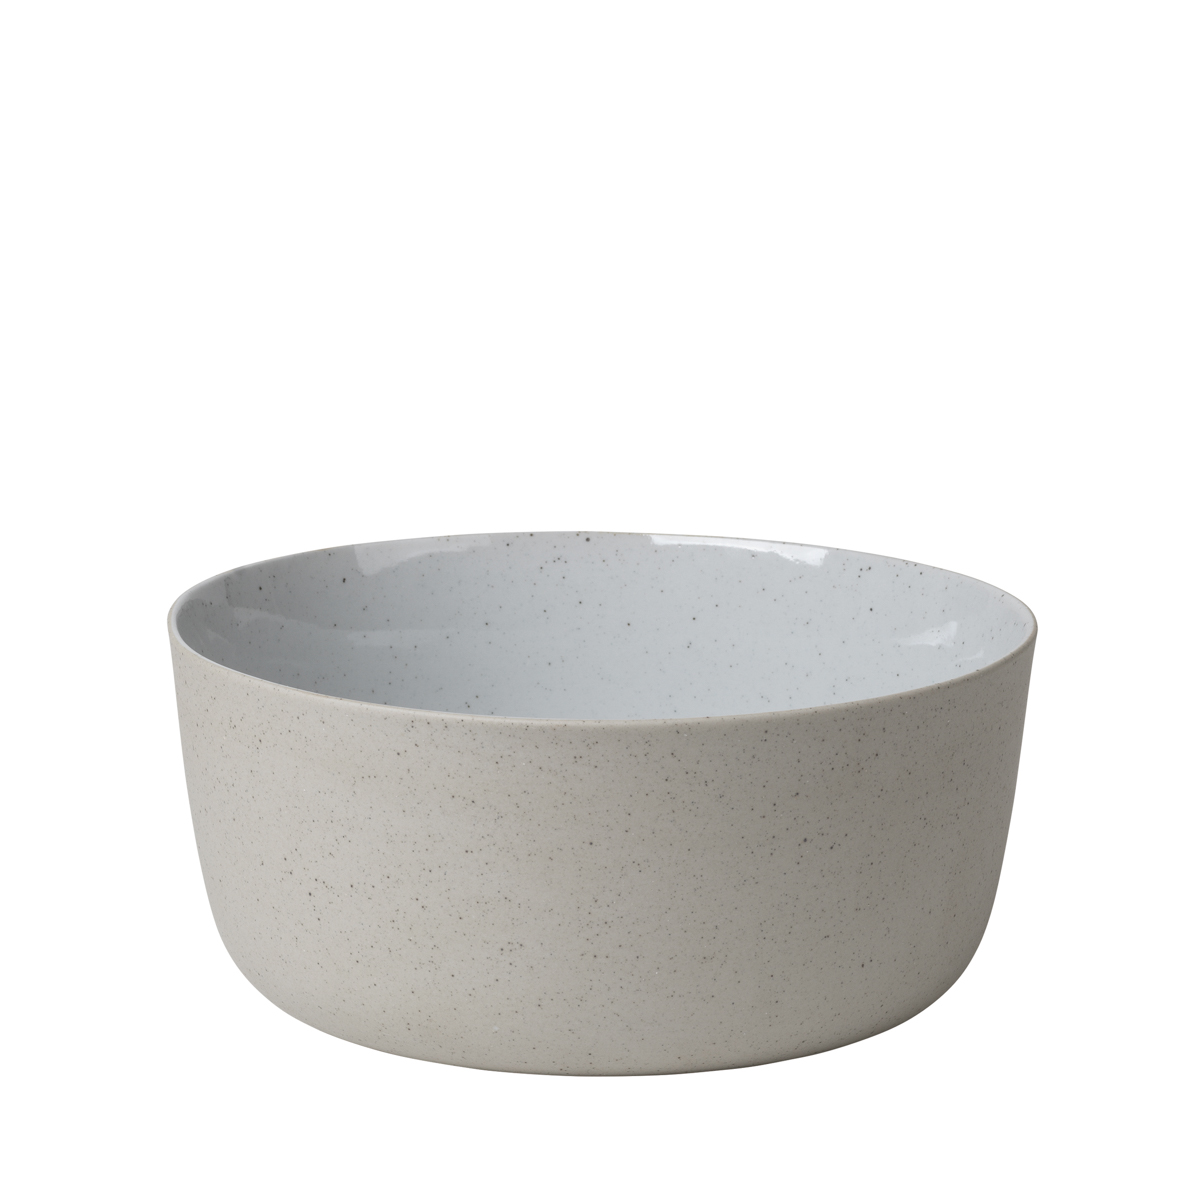 Schale -SABLO- Cloud Size L, Ø 20 cm. Material: Keramik. Von Blomus.